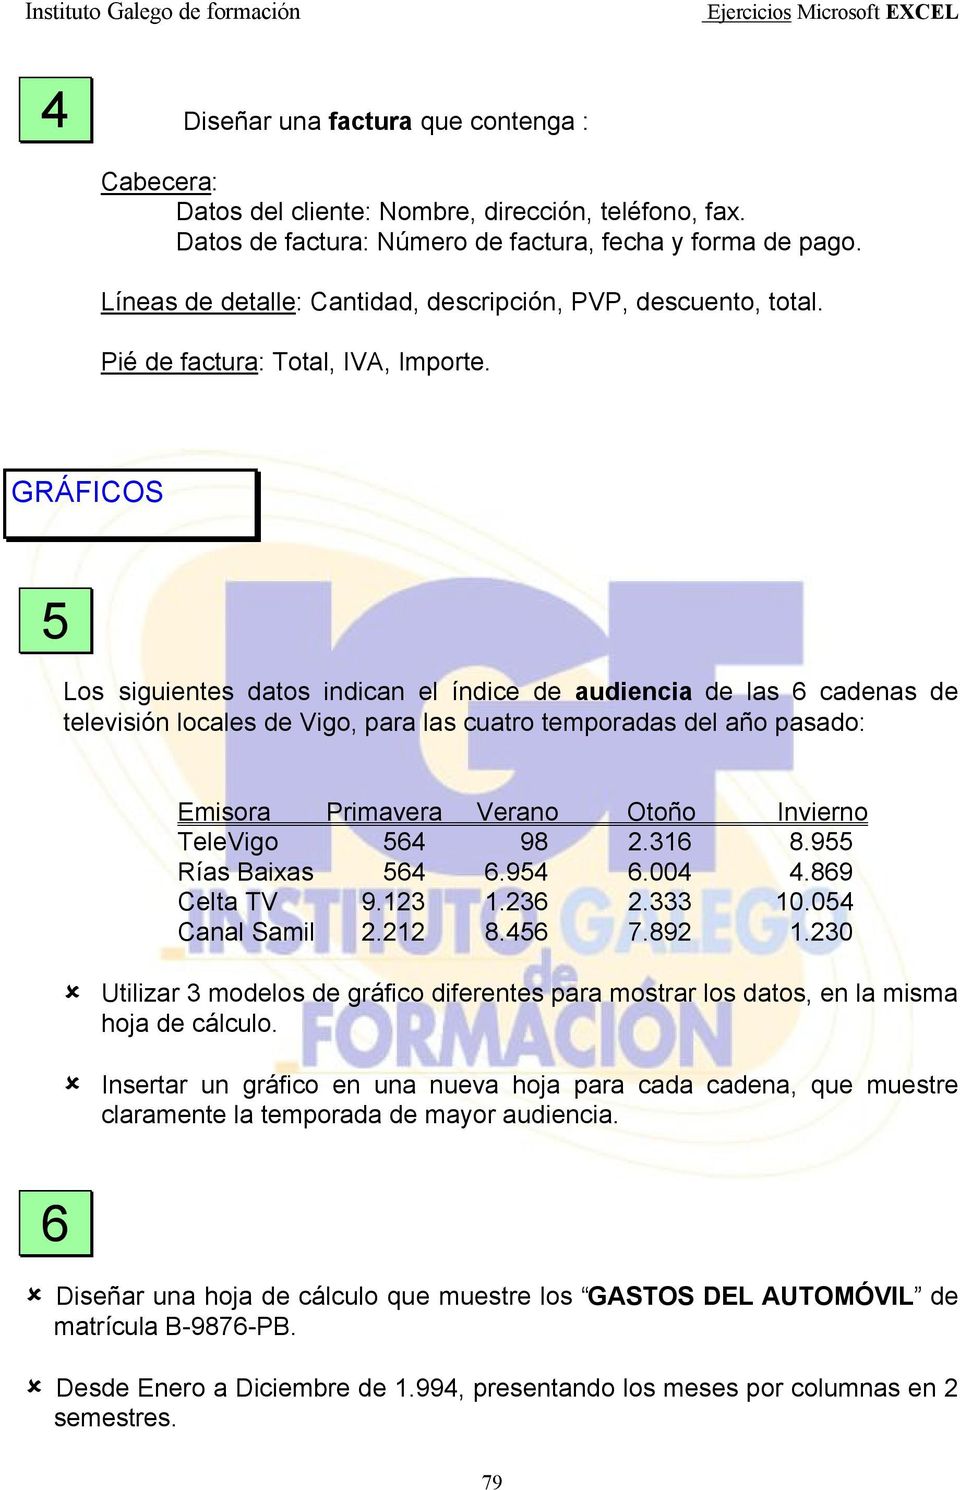 GRÁFICOS 5 Los siguientes datos indican el índice de audiencia de las 6 cadenas de televisión locales de Vigo, para las cuatro temporadas del año pasado: Emisora Primavera Verano Otoño Invierno